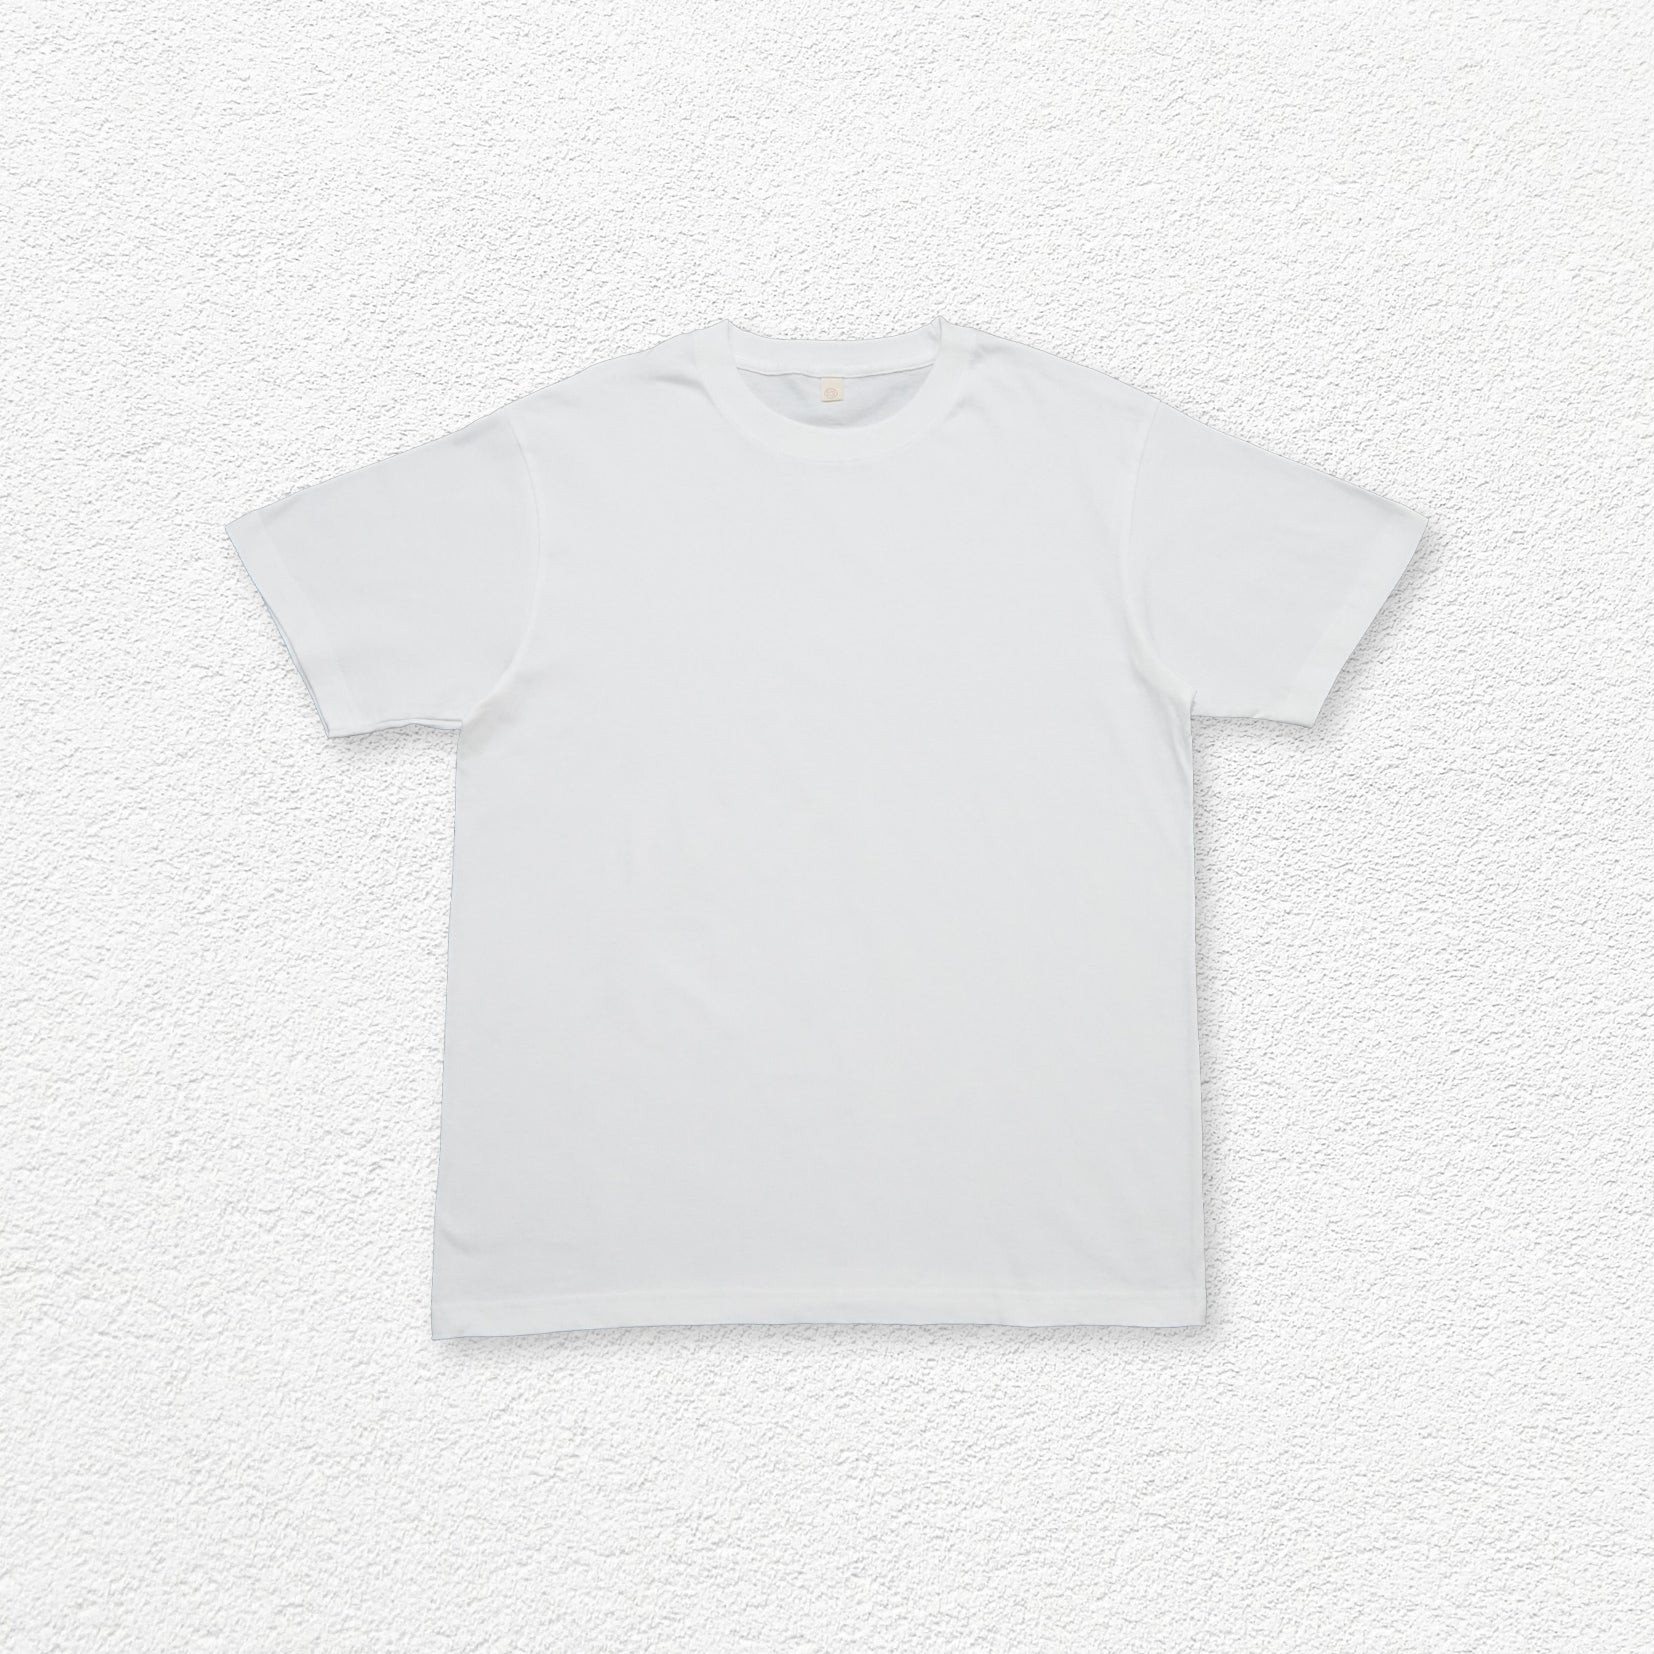 Unisex oversized basic short sleeve t-shirt - white